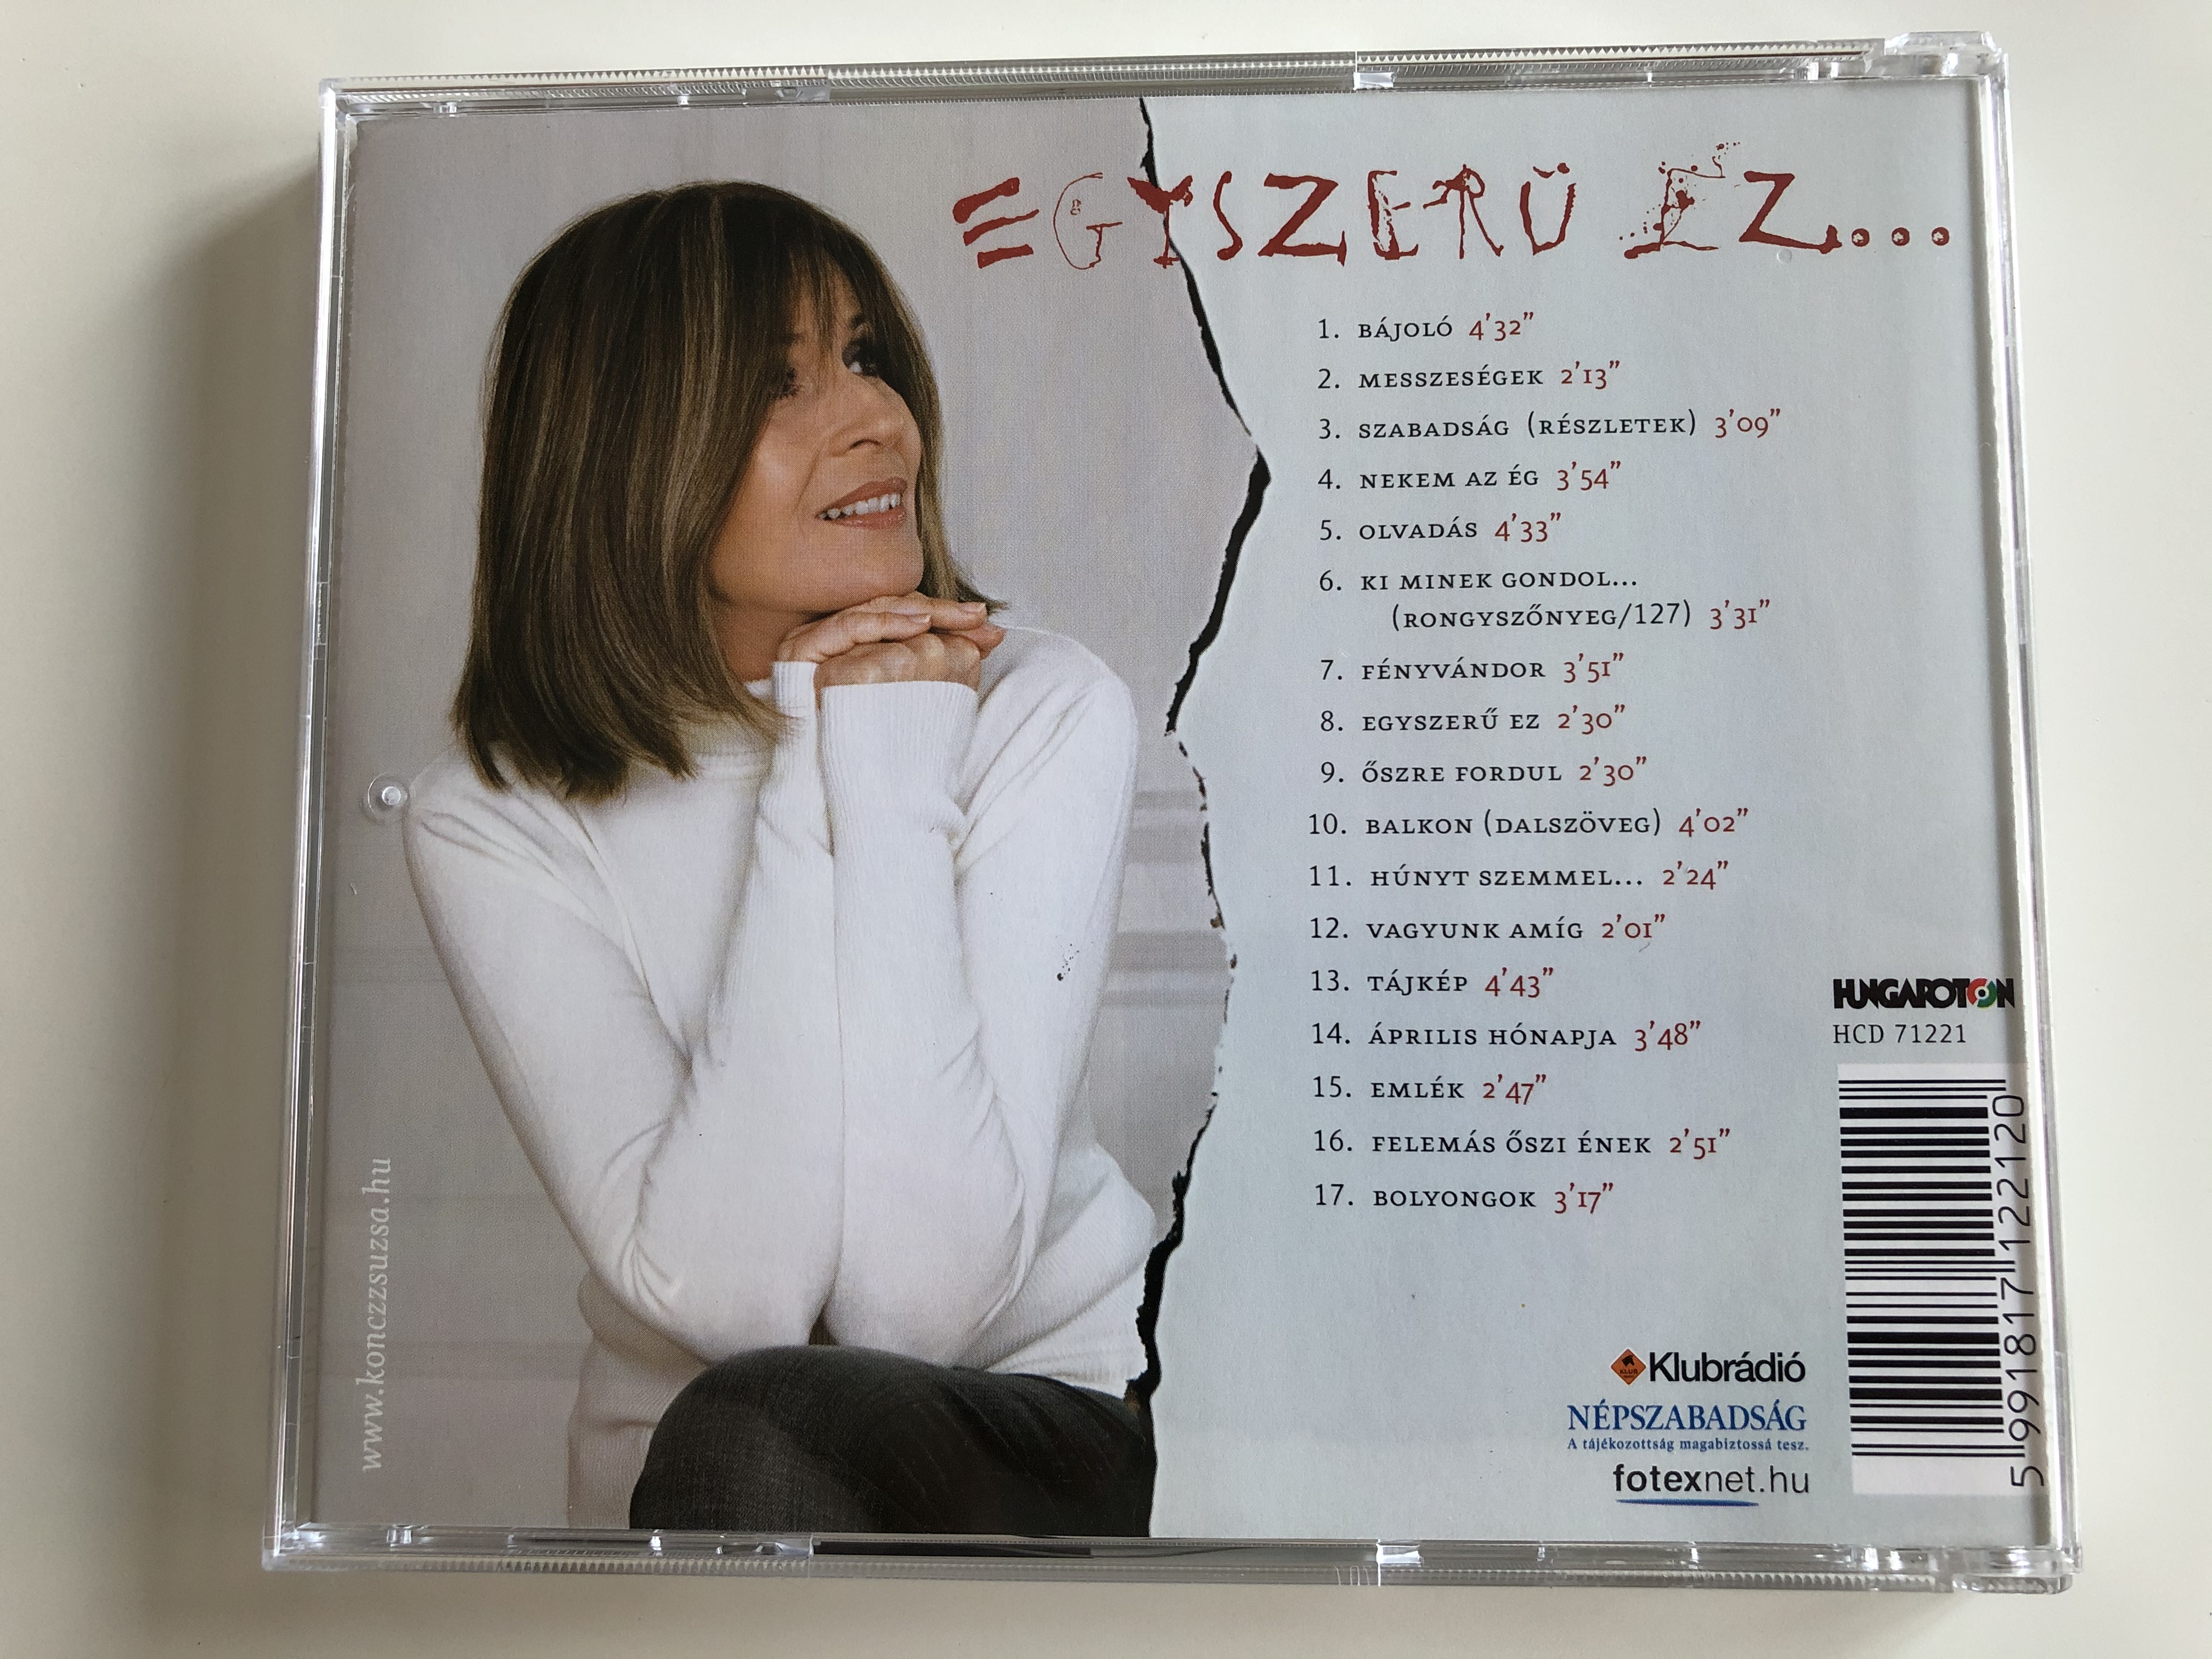 koncz-zsuzsa-egyszer-ez...-hungaroton-audio-cd-2006-hcd-71221-9-.jpg